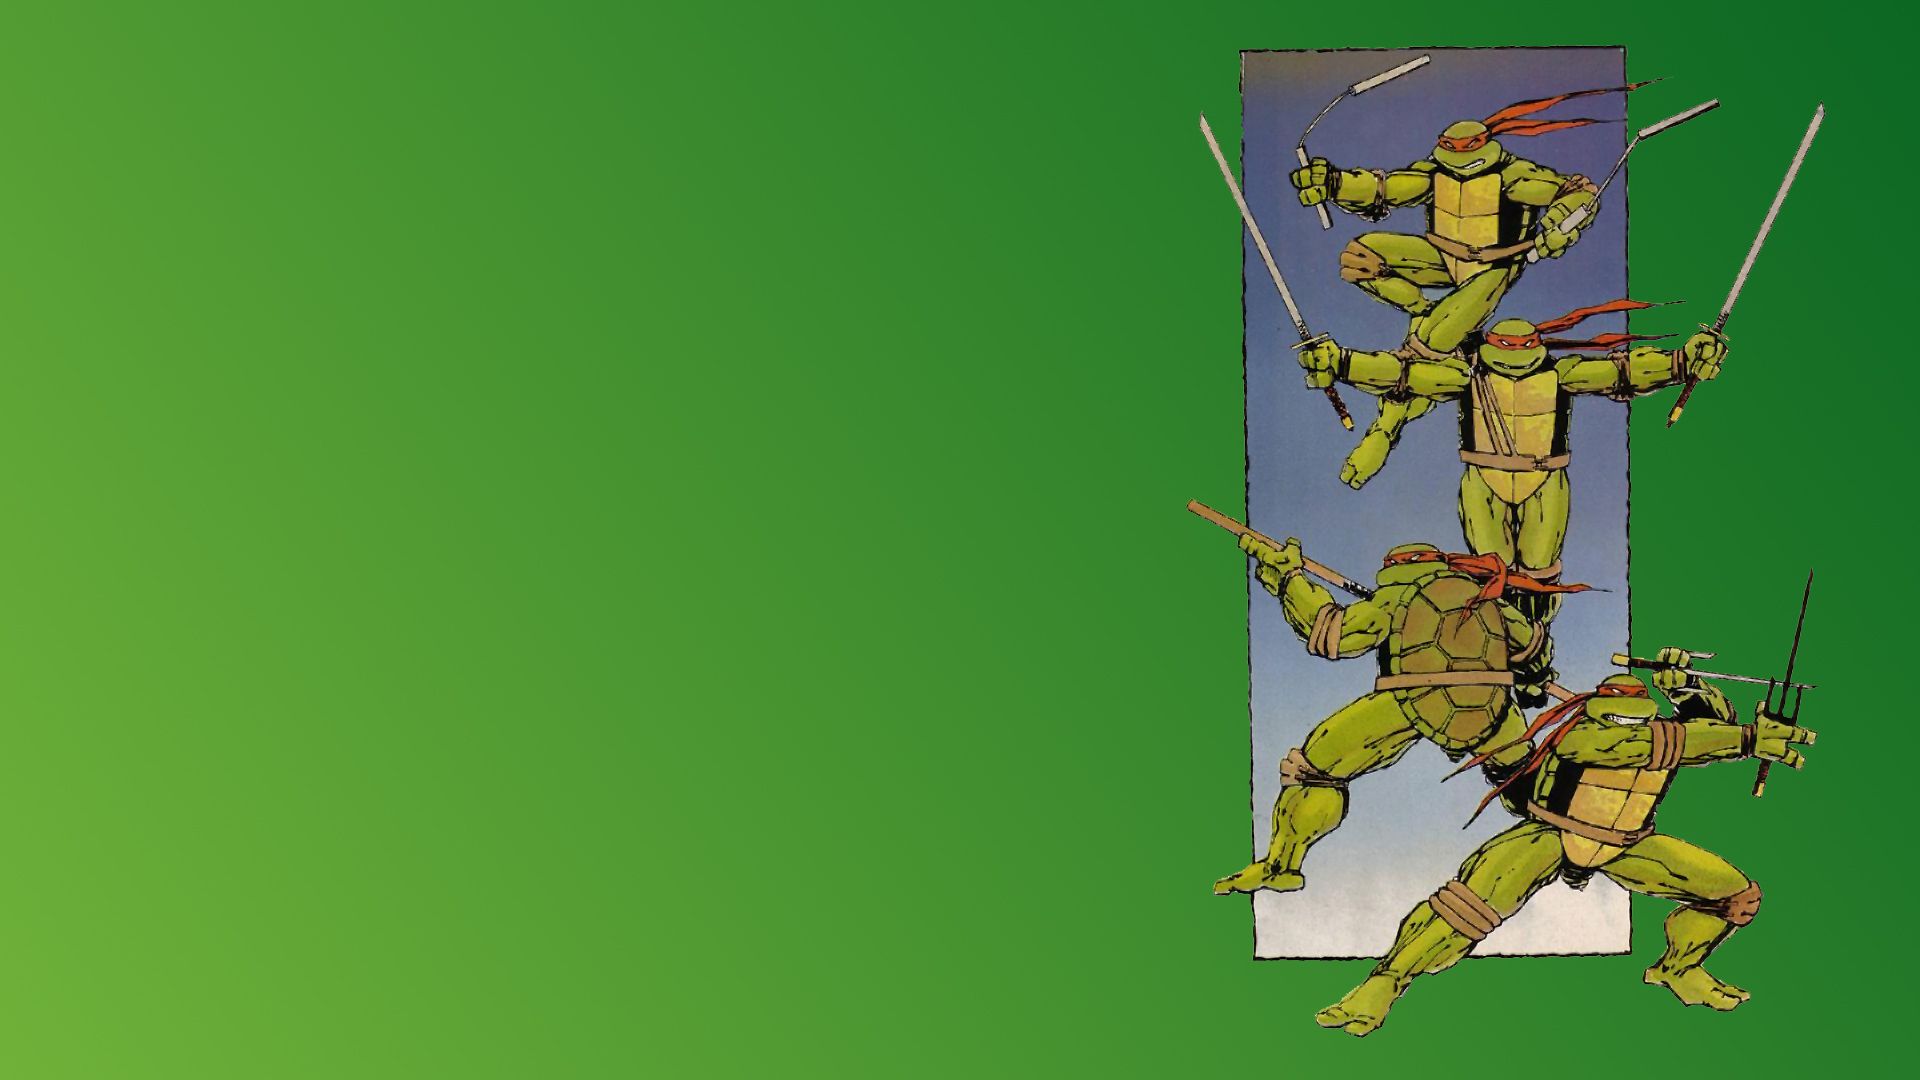 Cartoons Teenage Mutant Ninja Turtles wallpaper | 1920x1080 ...